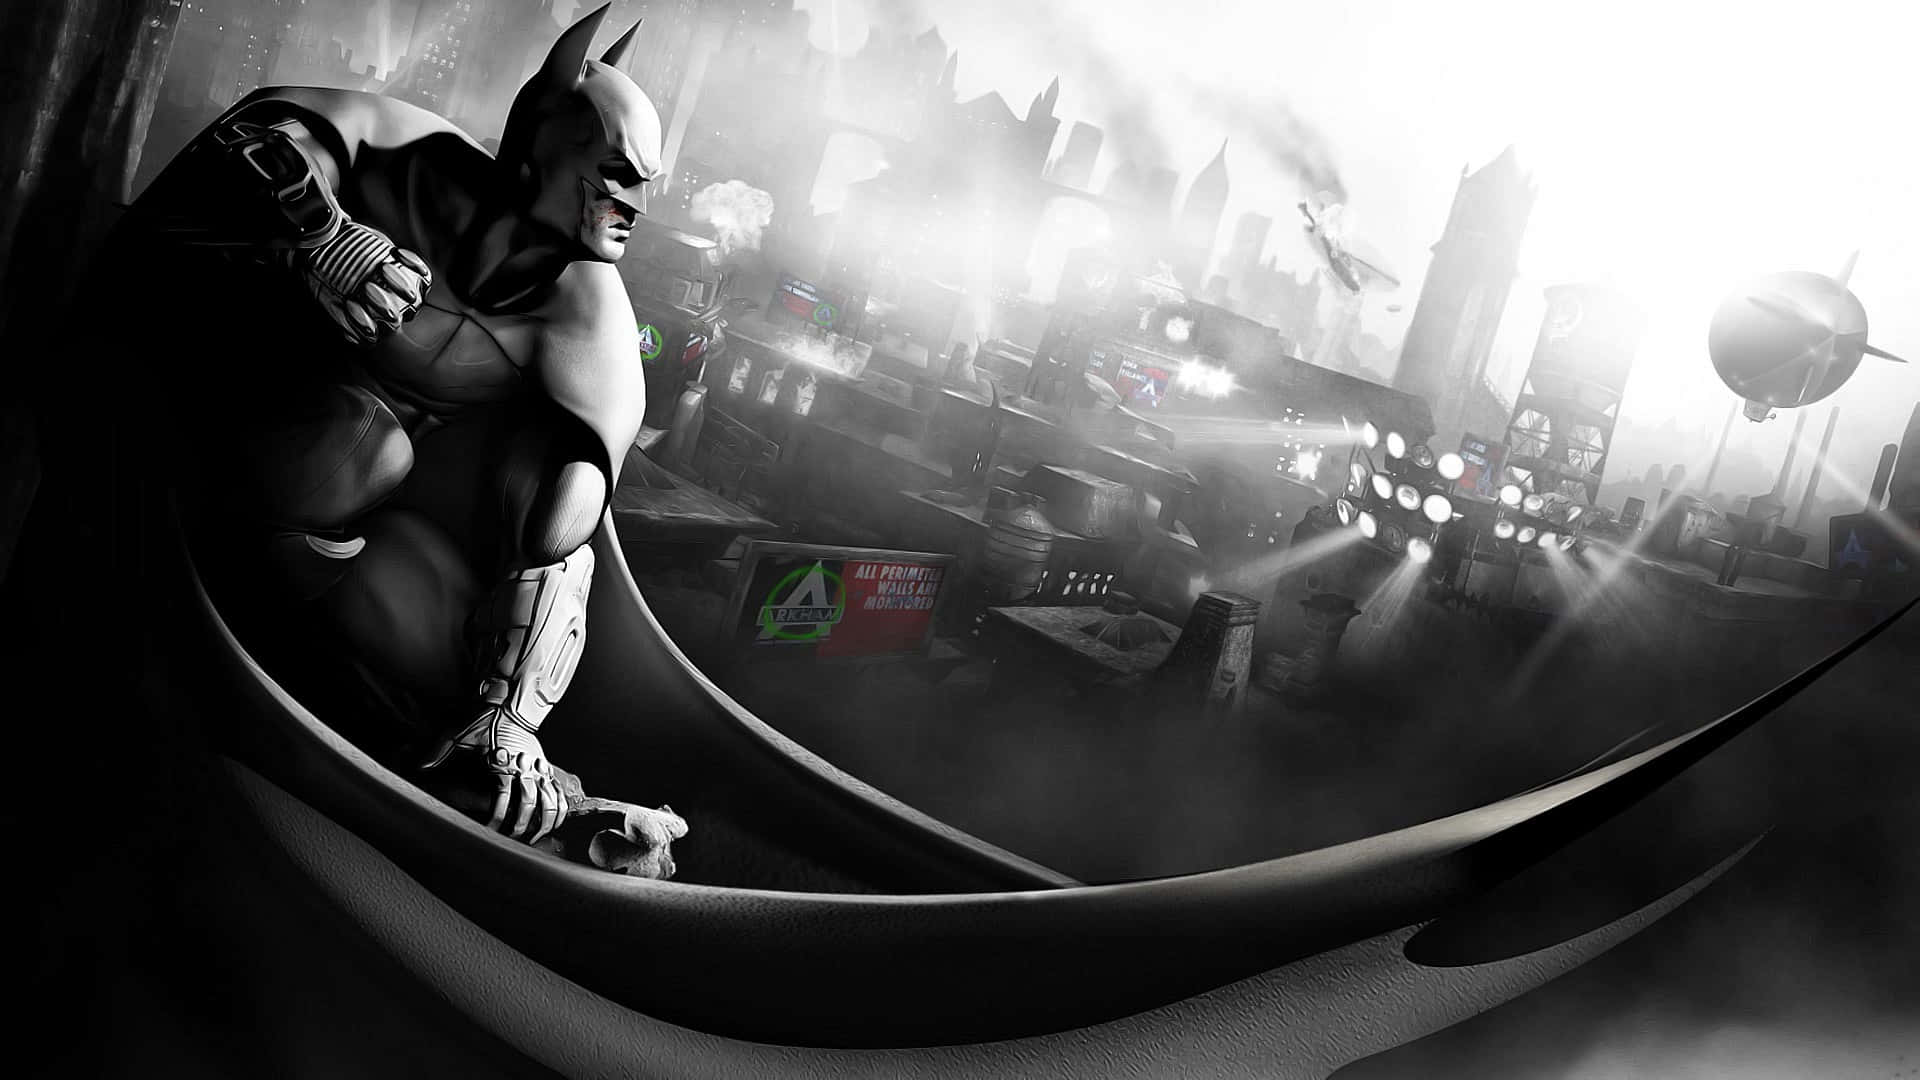 Gotham City Awaits Wallpaper